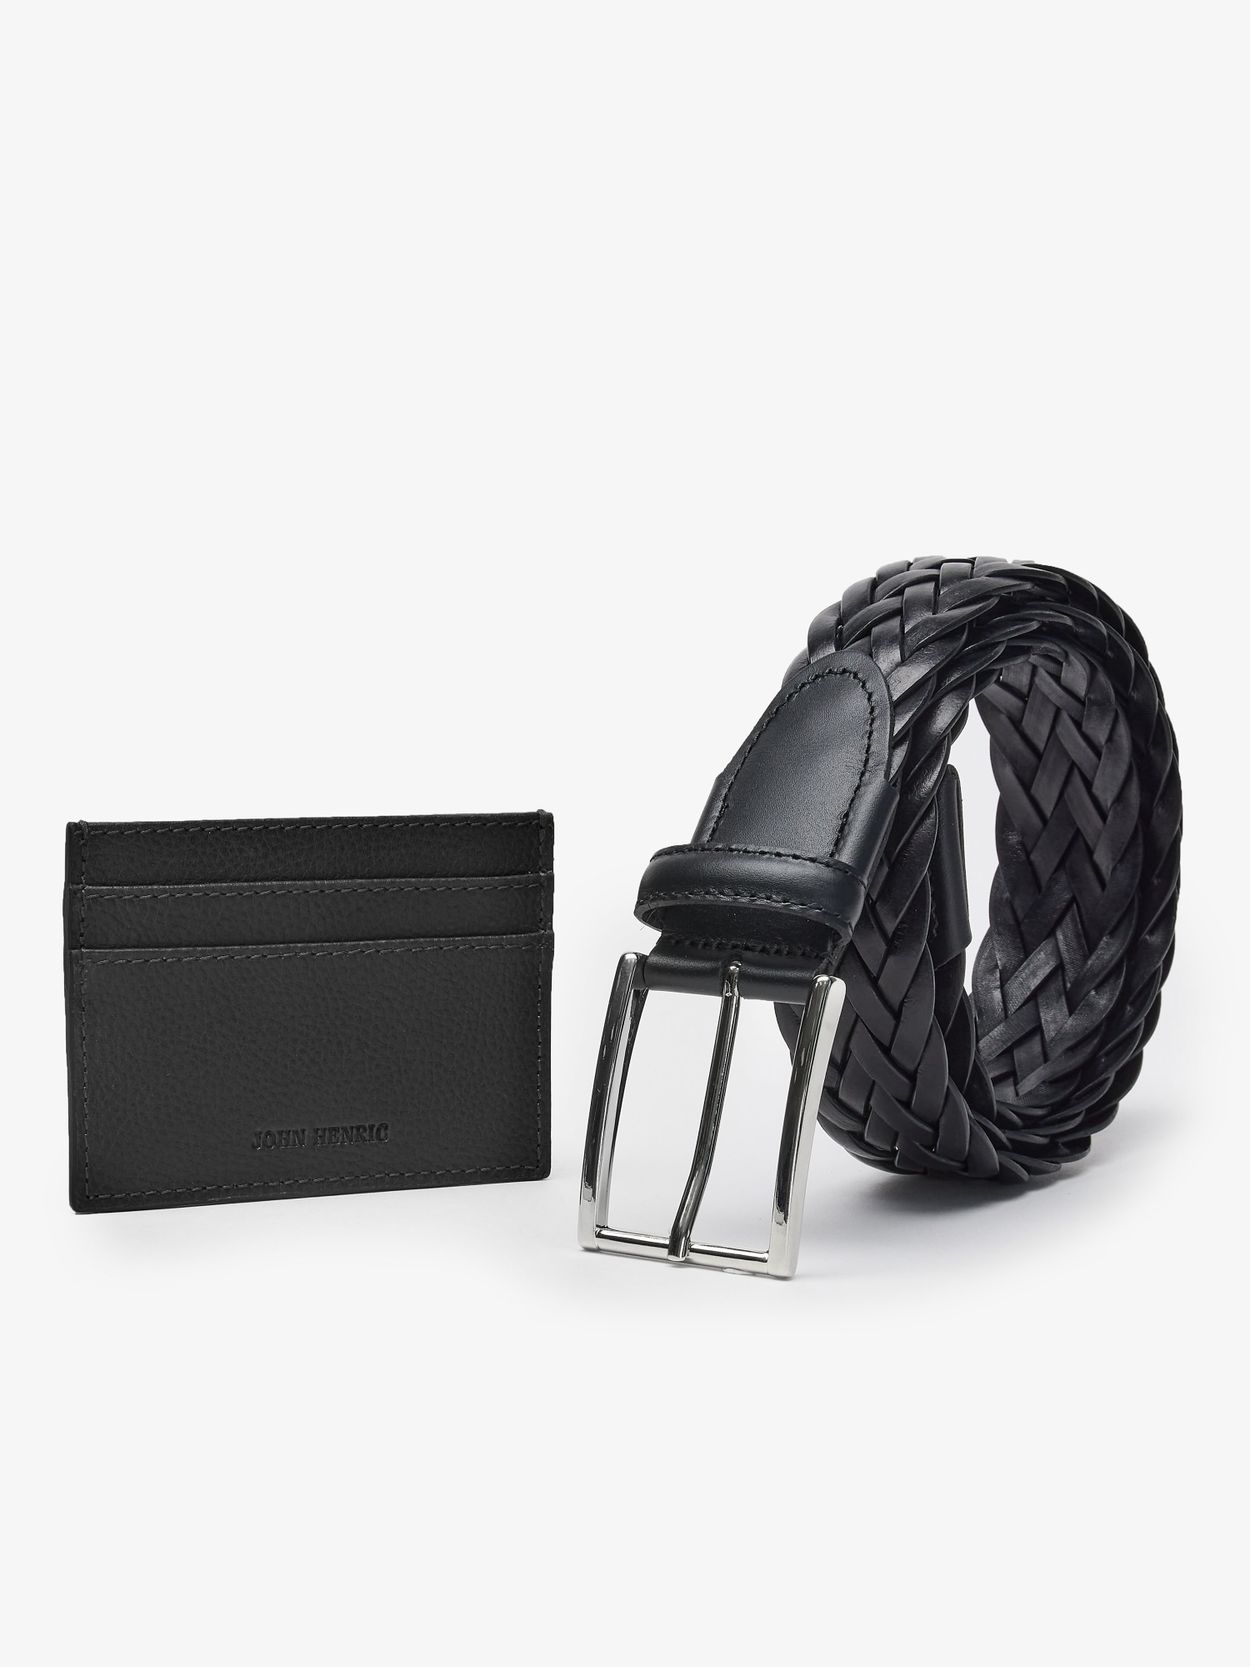 Black Leather belt & Cardholder